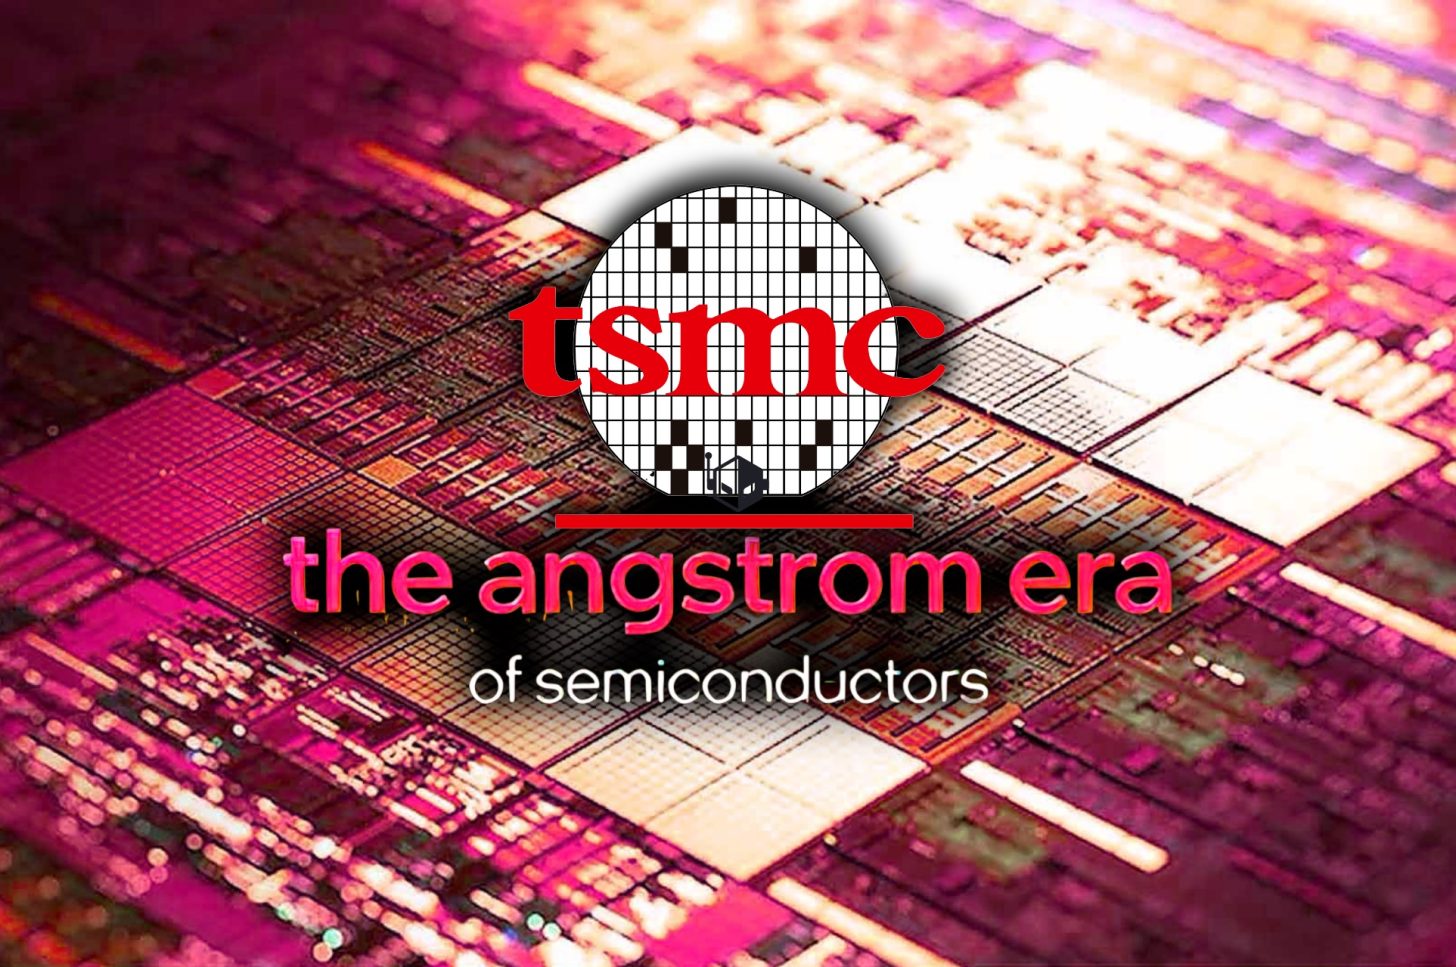 TSMC-Angstorm-Era-Semiconductors-Process-Nodes-1456x967.jpg